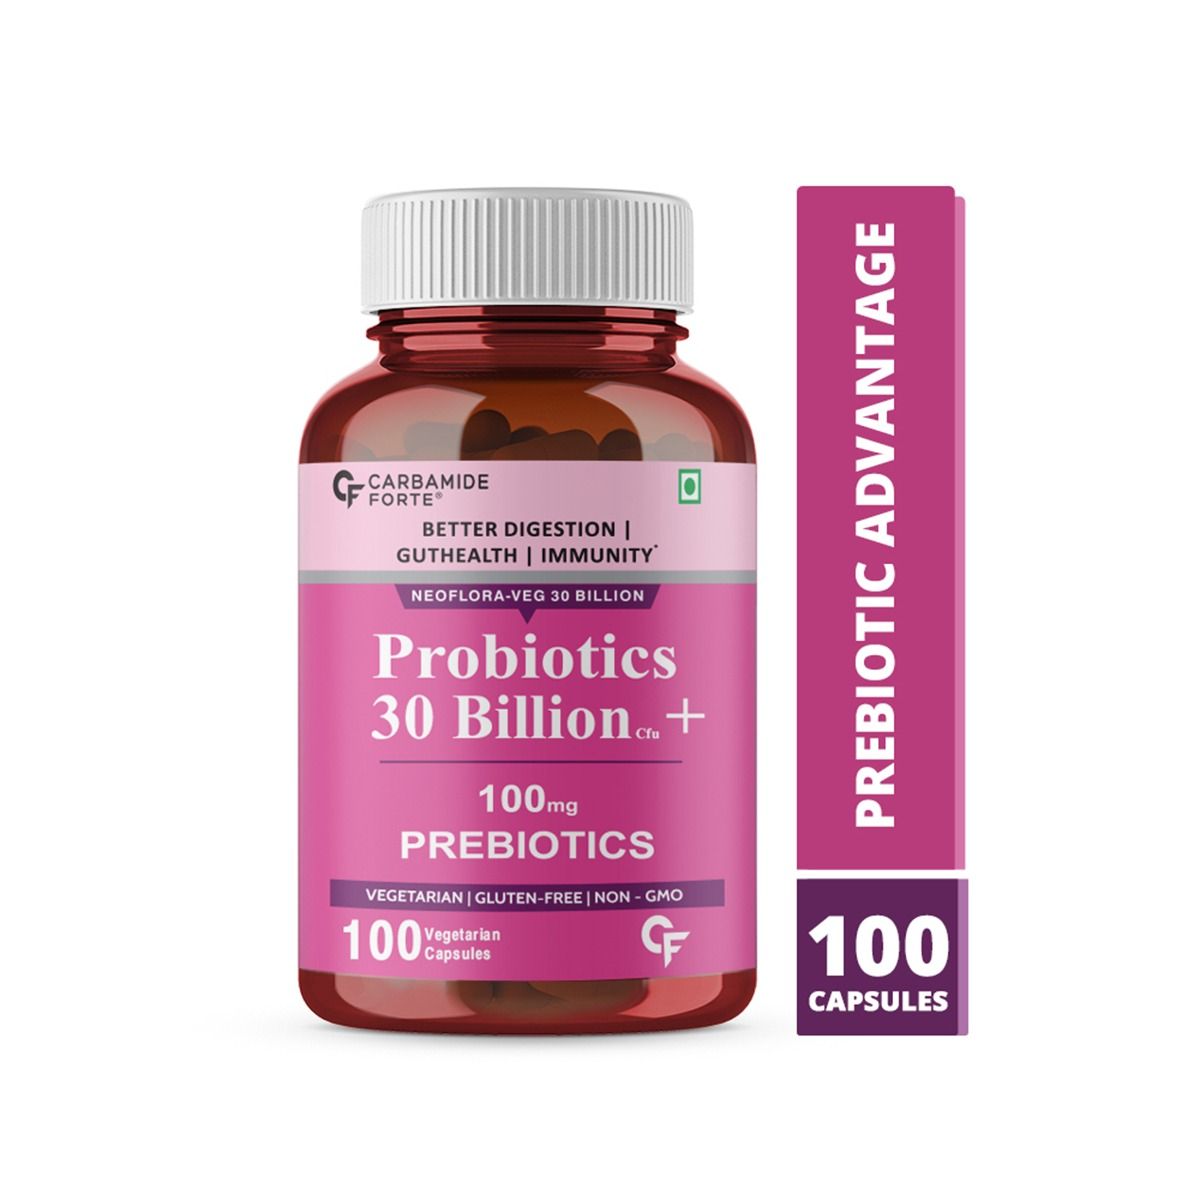 Carbamide Forte Probiotics 30 Billion + 100mg Prebiotics Vegetarian Capsules, 100 Count, Pack of 1 